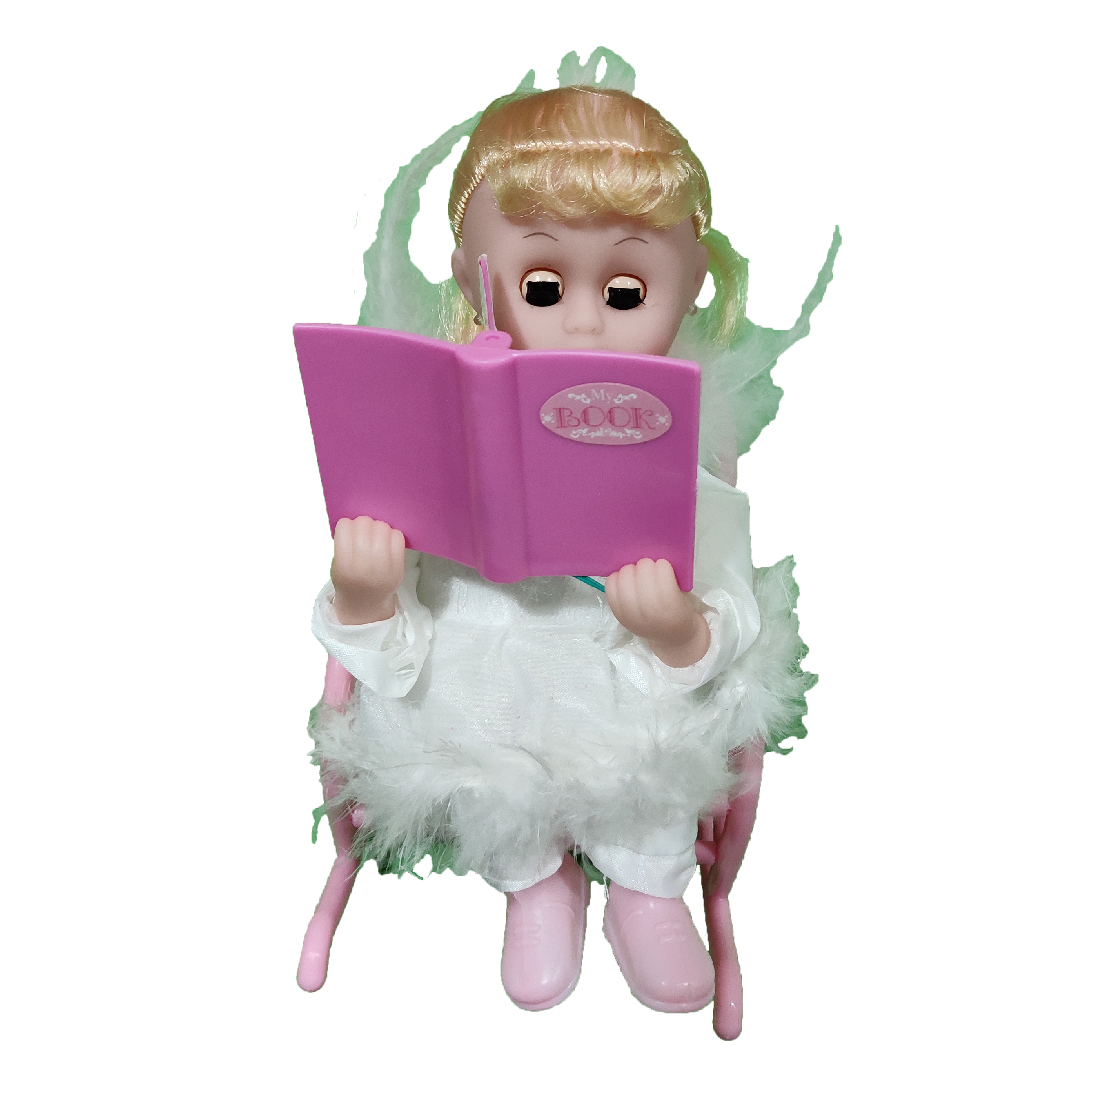 Baby Angel Reading Doll for Kids SRT6822